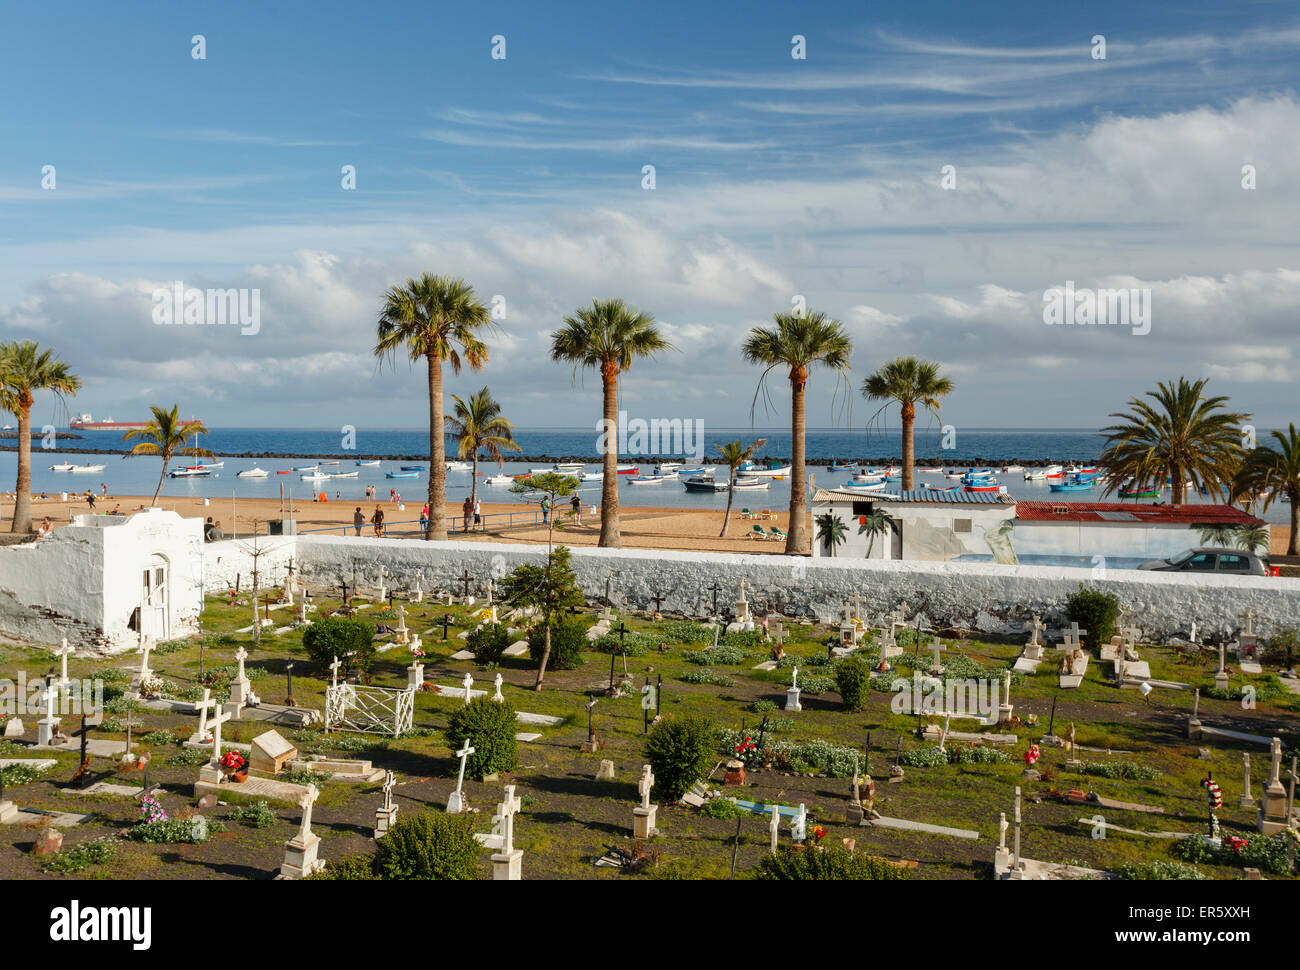 Antiguo cementerio con playa y palmeras en el fondo, la Playa de las Teresitas, cerca de San Andrés, en la costa del océano Atlántico, T Foto de stock